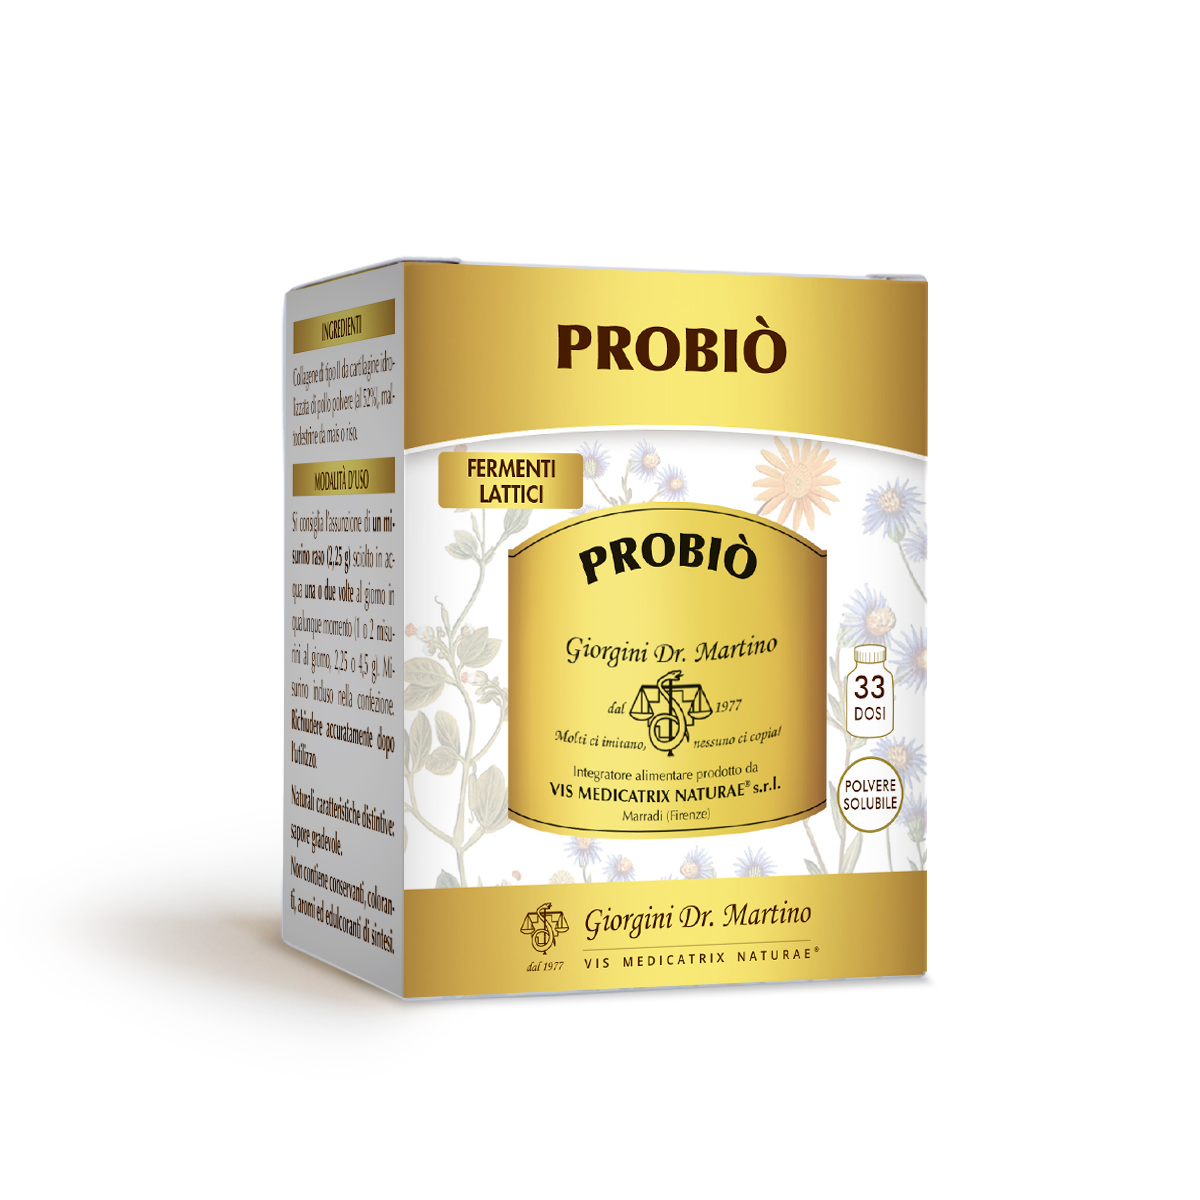 PROBIO' soluble powder 100 g